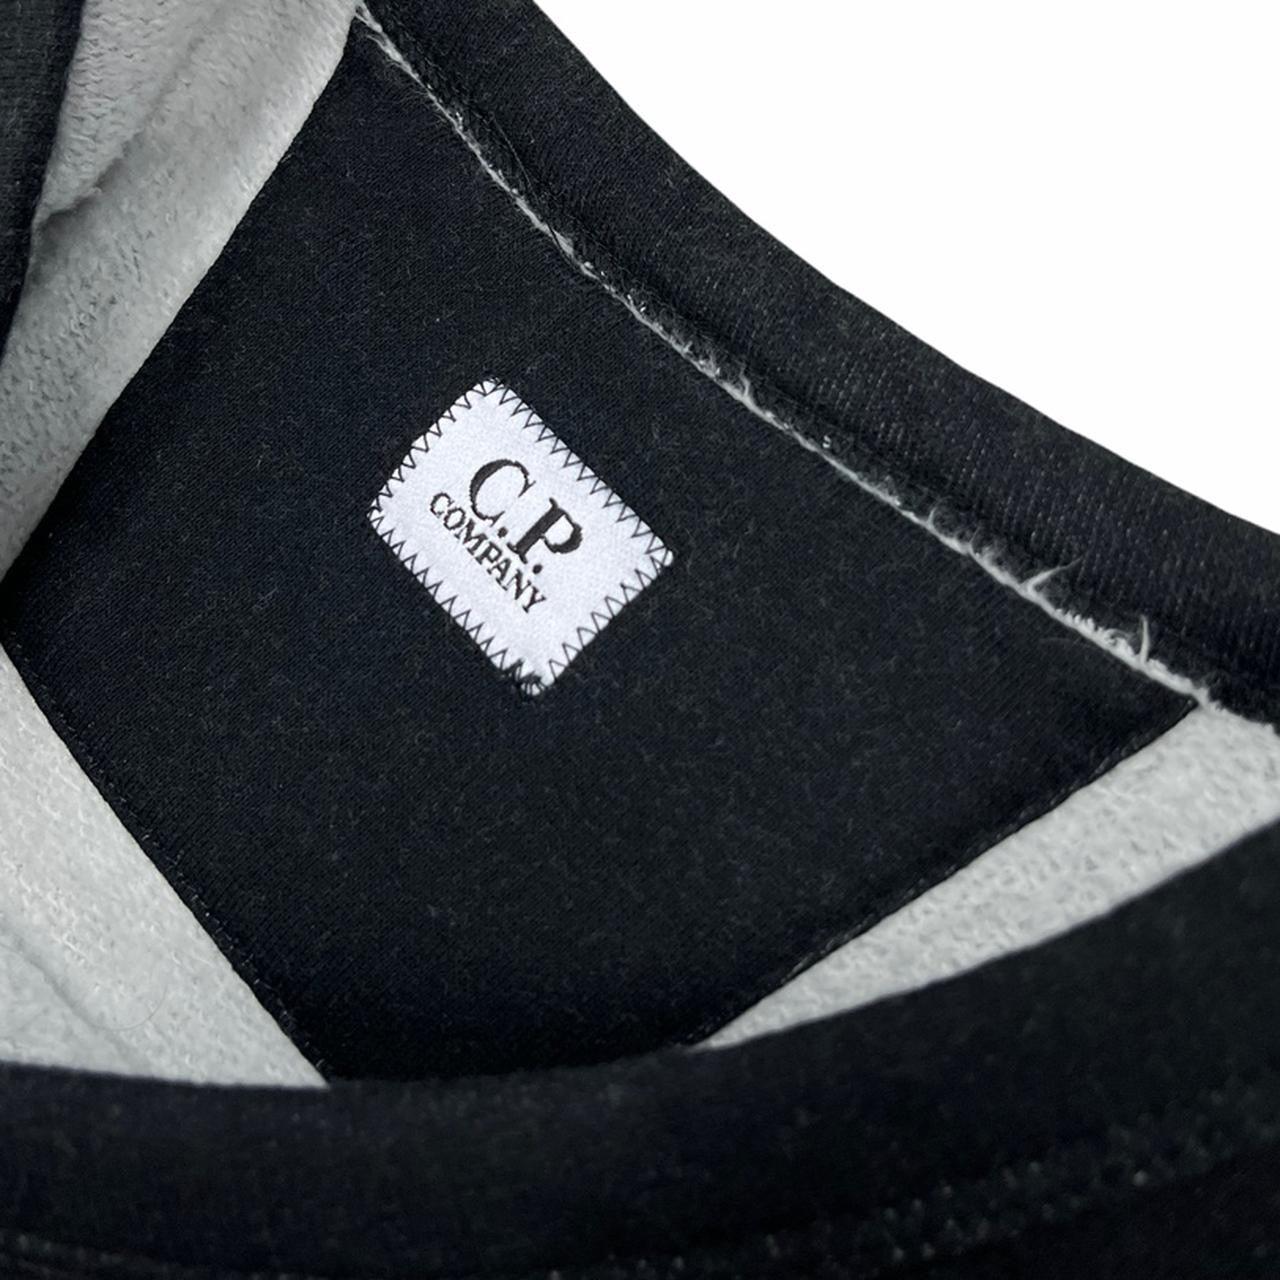 CP Company striped pullover crewneck - Known Source